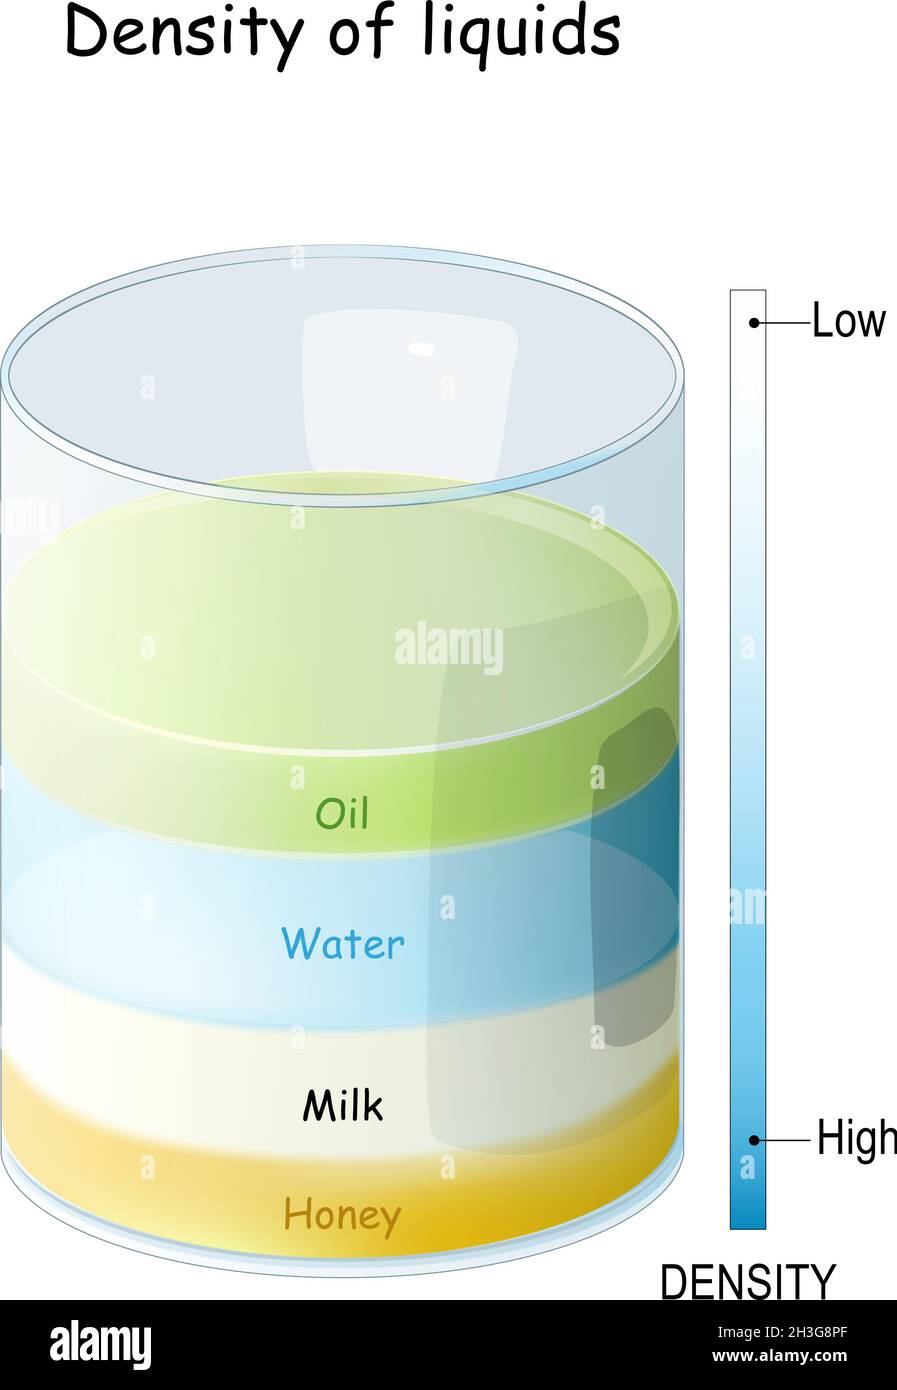 Densità di liquidi da Miele e latte ad alta densità ad acqua e olio a bassa densità. Un cilindro di vetro contenente vari liquidi colorati Illustrazione Vettoriale